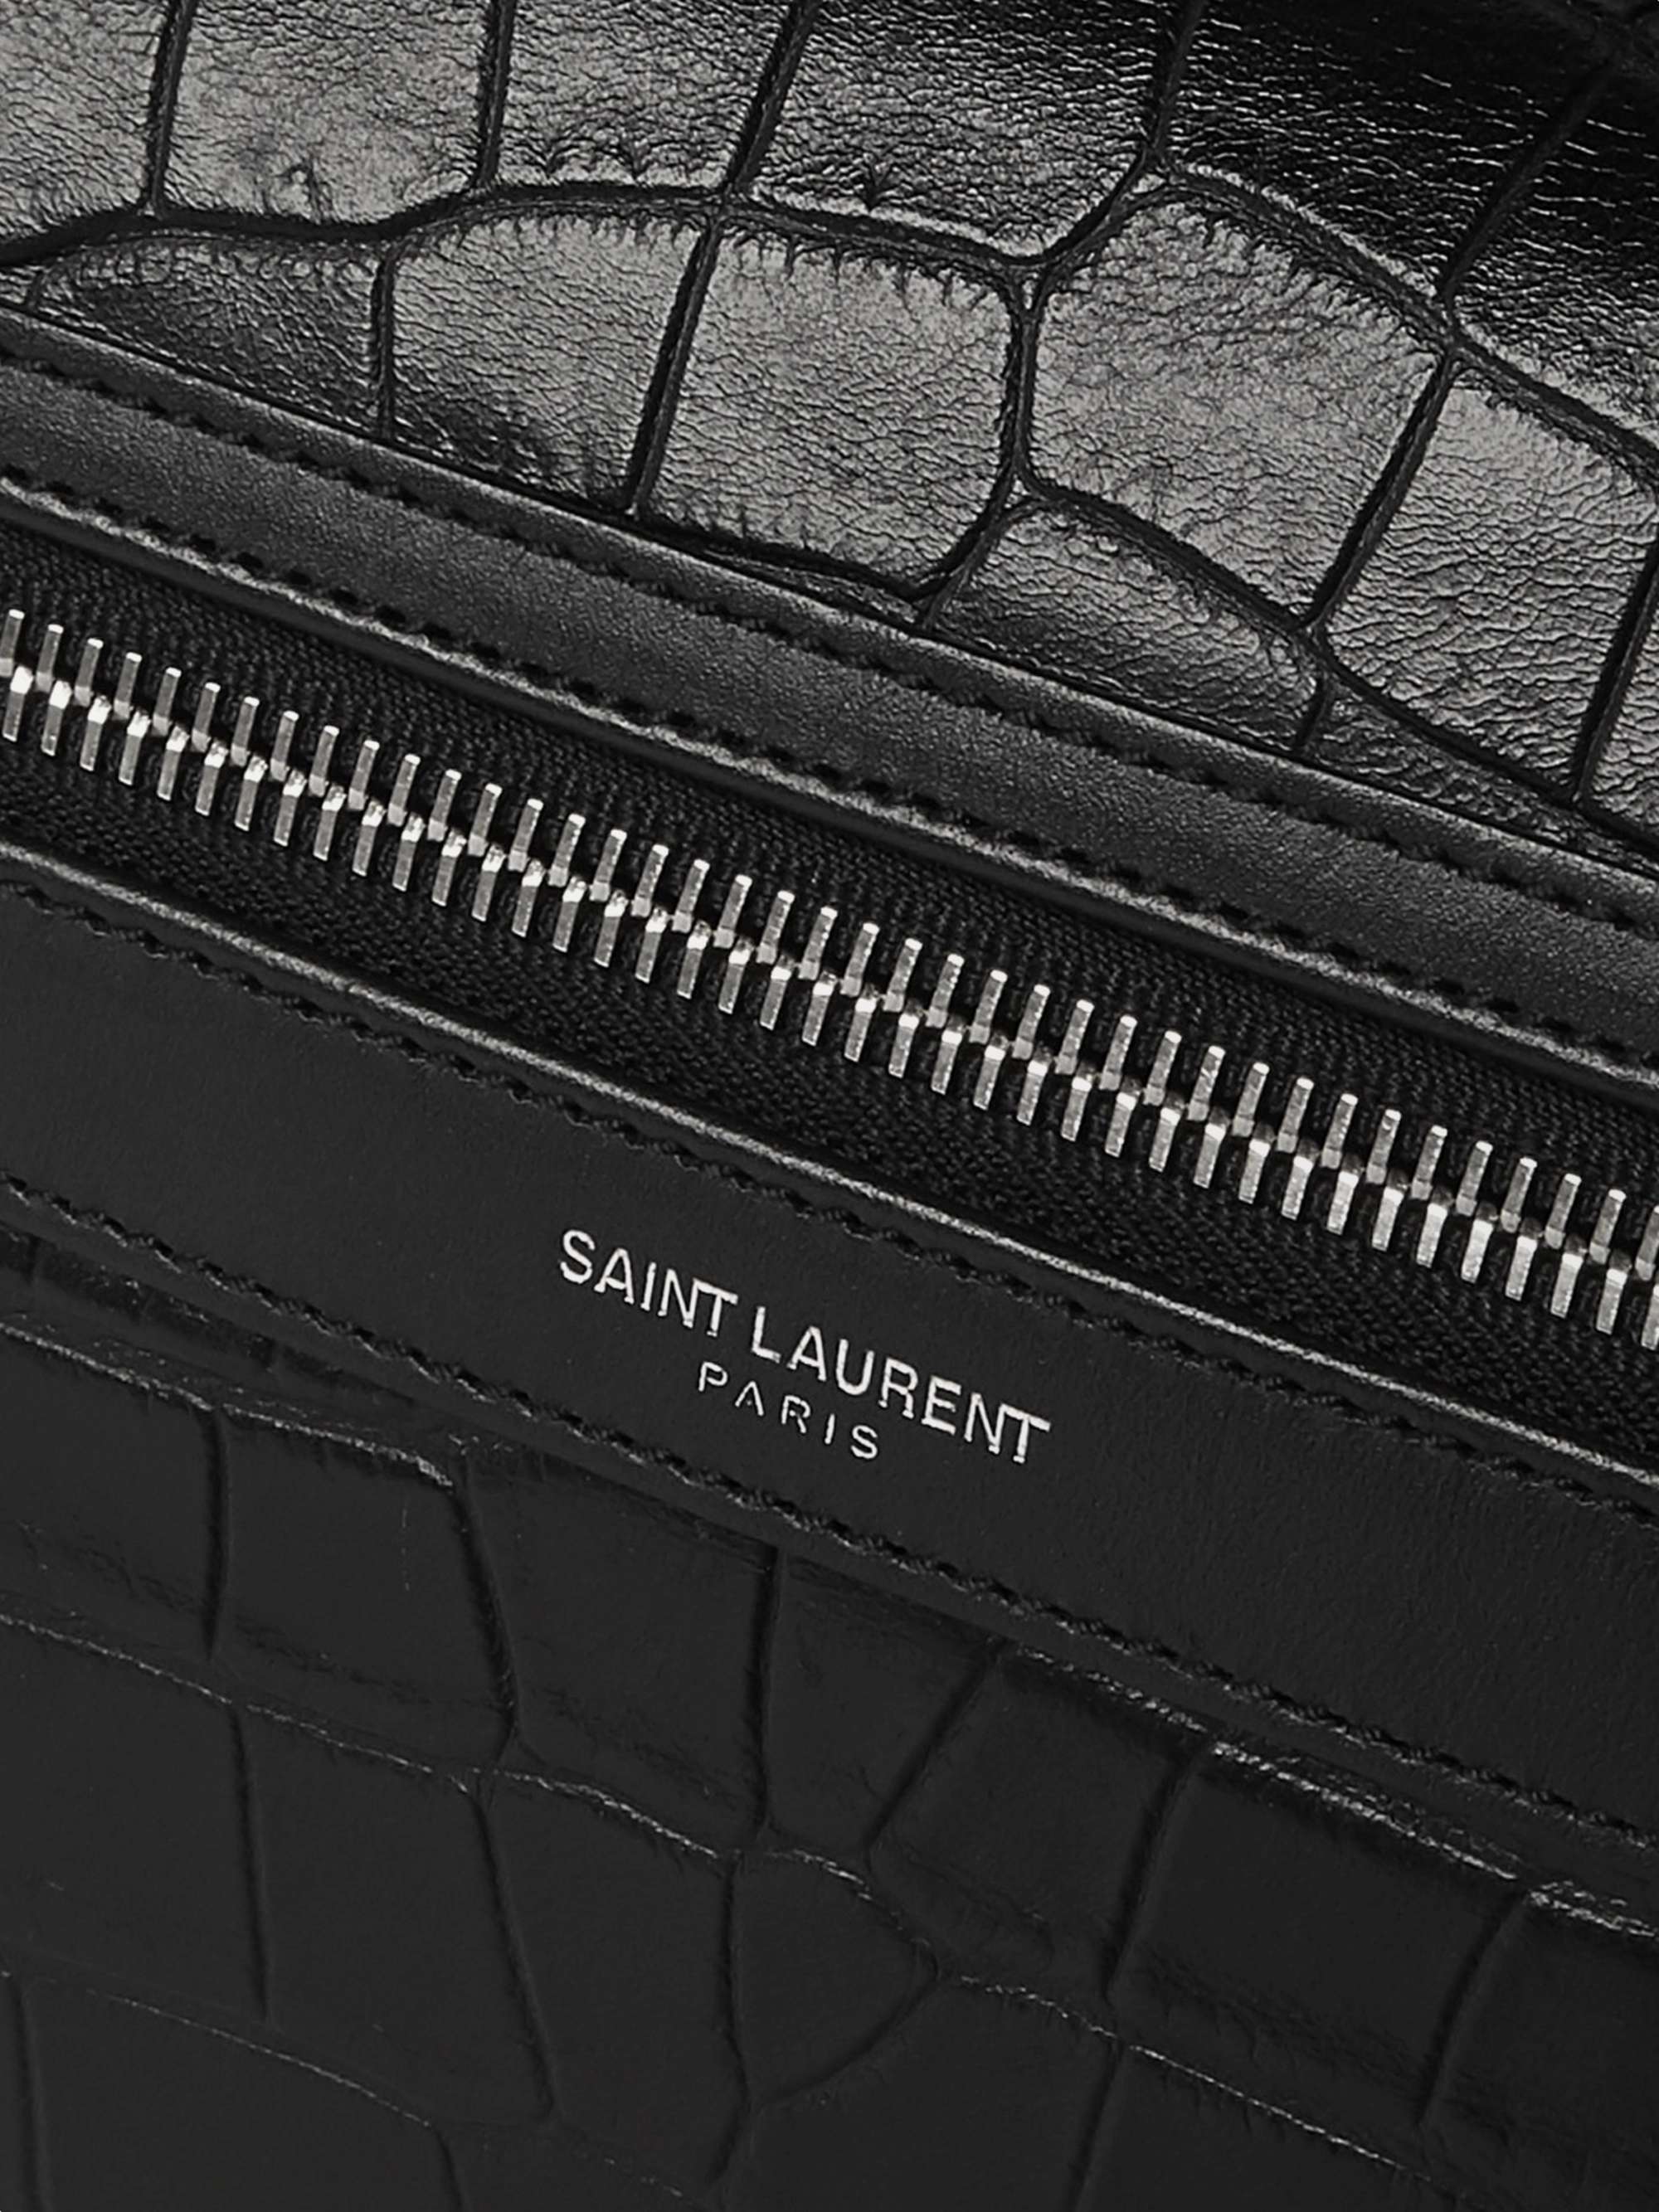 SAINT LAURENT City Croc-Effect Leather Backpack